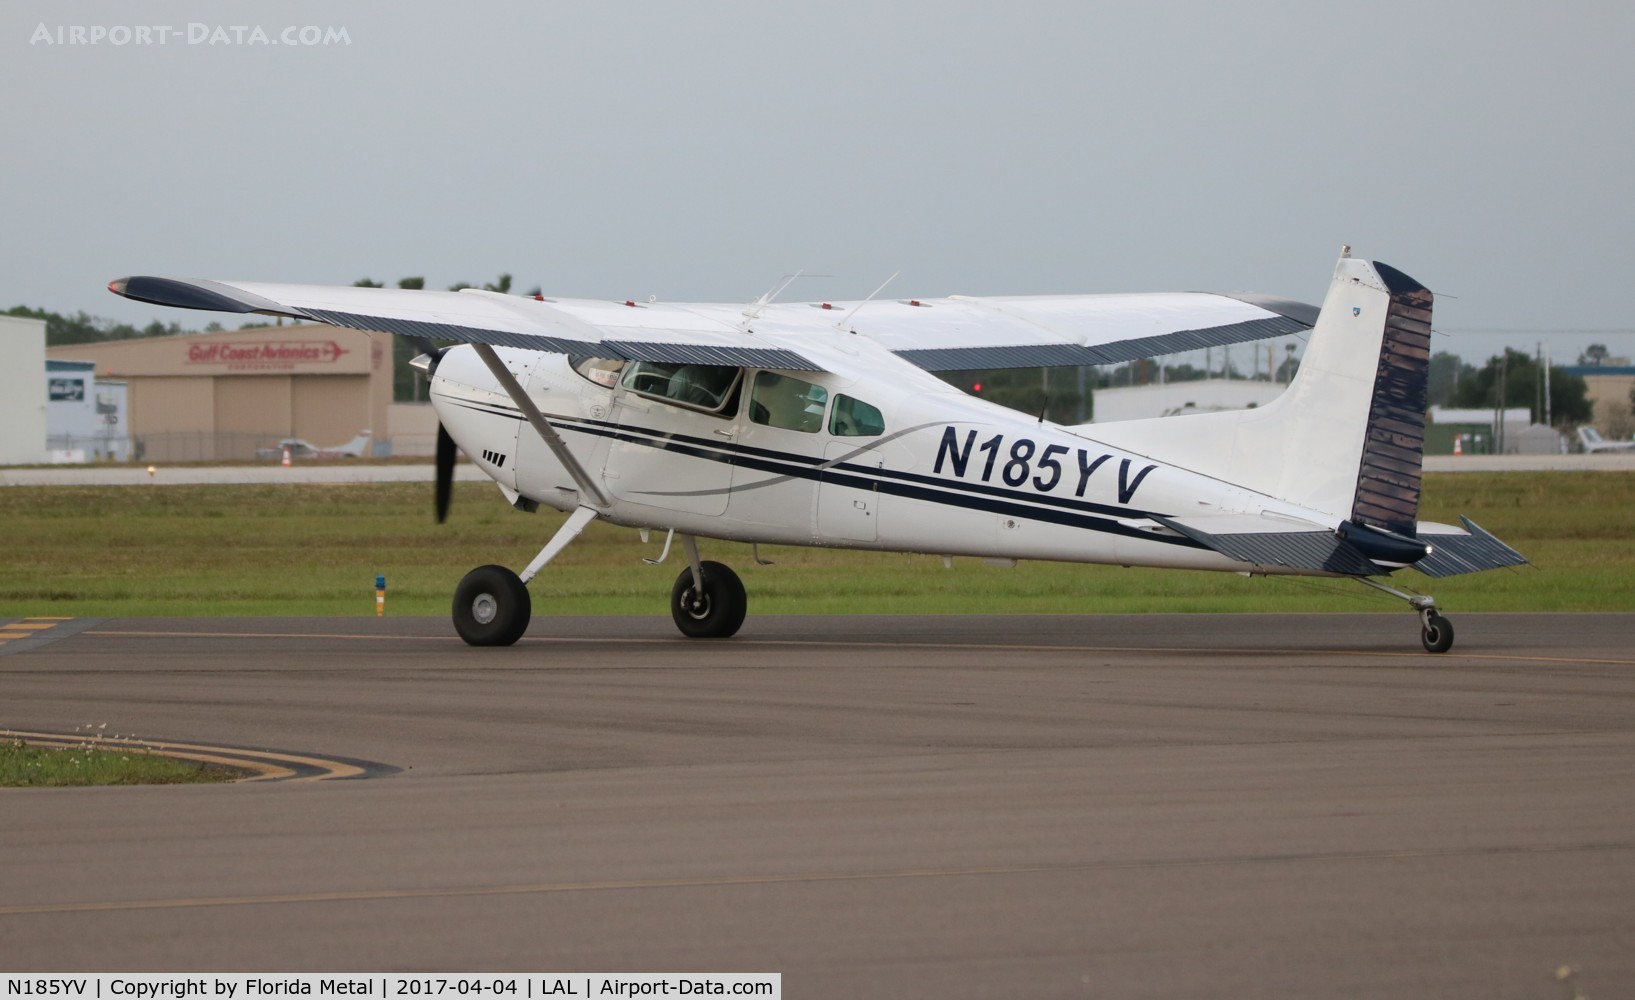 N185YV, 1978 Cessna 185A Skywagon C/N 18503546, Cessna 185A